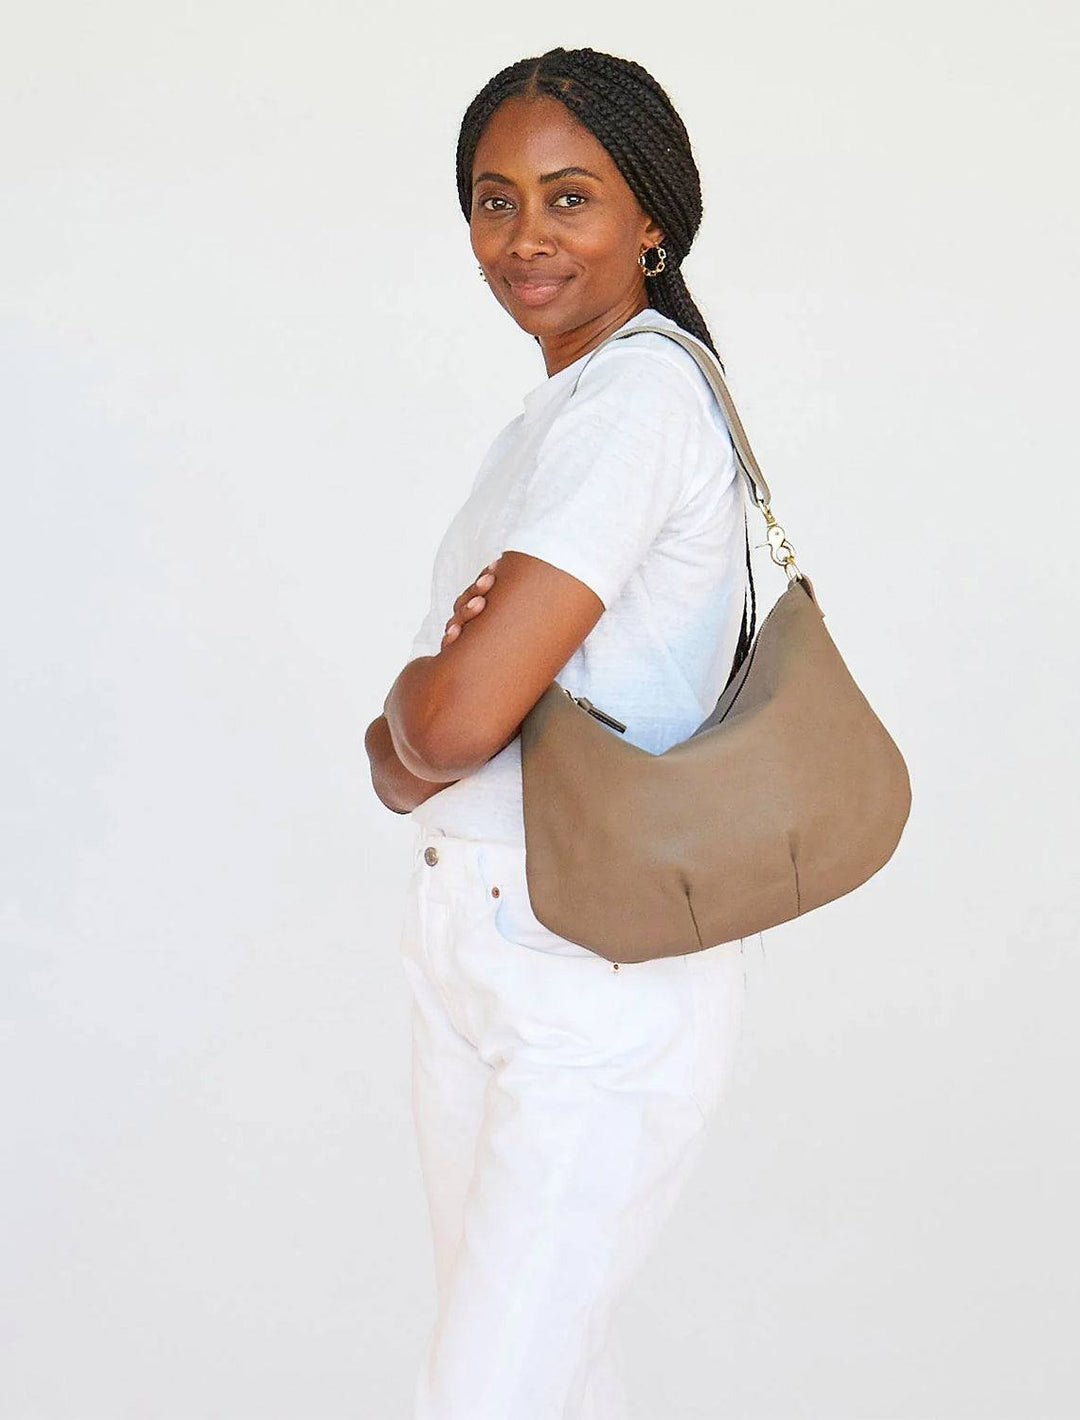 Moyen Messenger Bag by Clare V. for $20